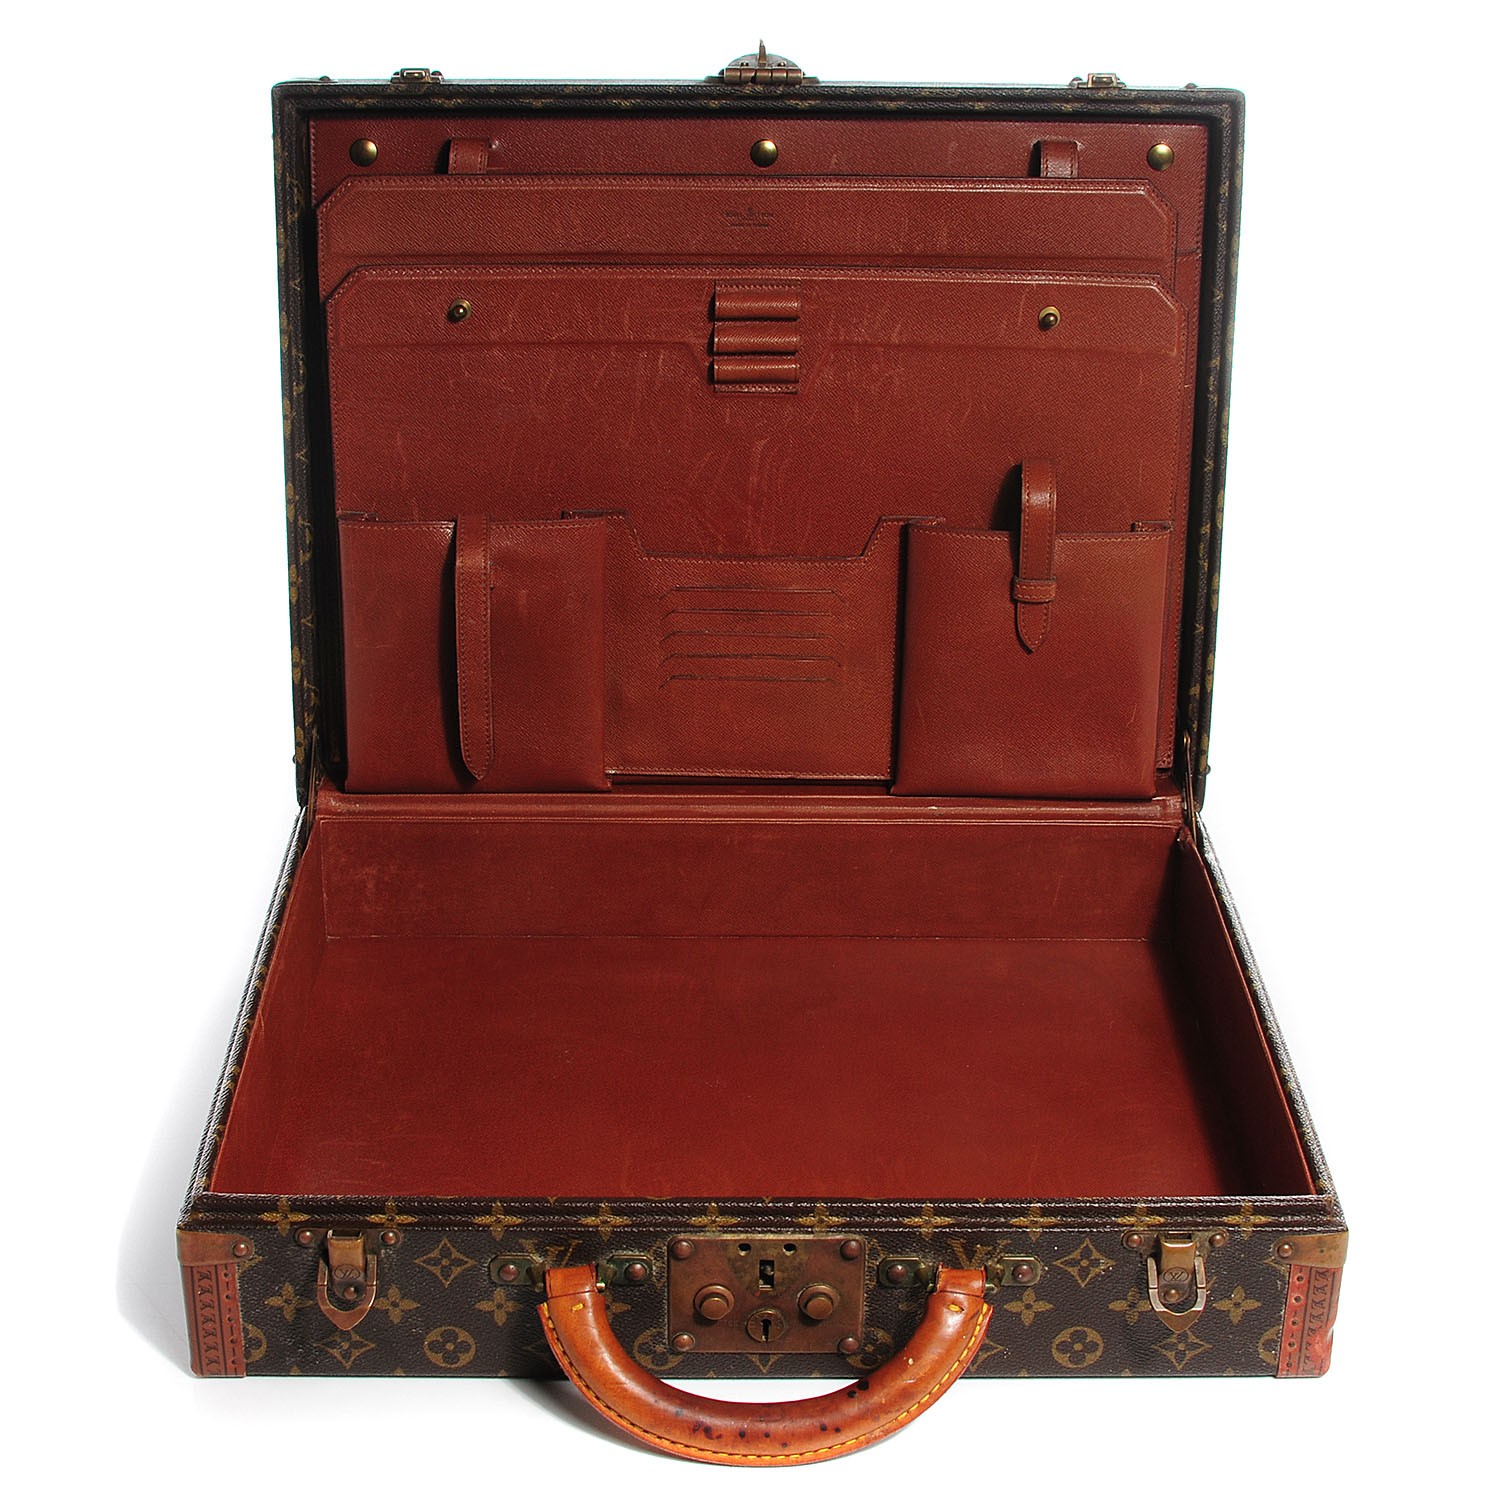 Sold at Auction: Vintage Louis Vuitton Monogram PrÃ©sident Briefcase